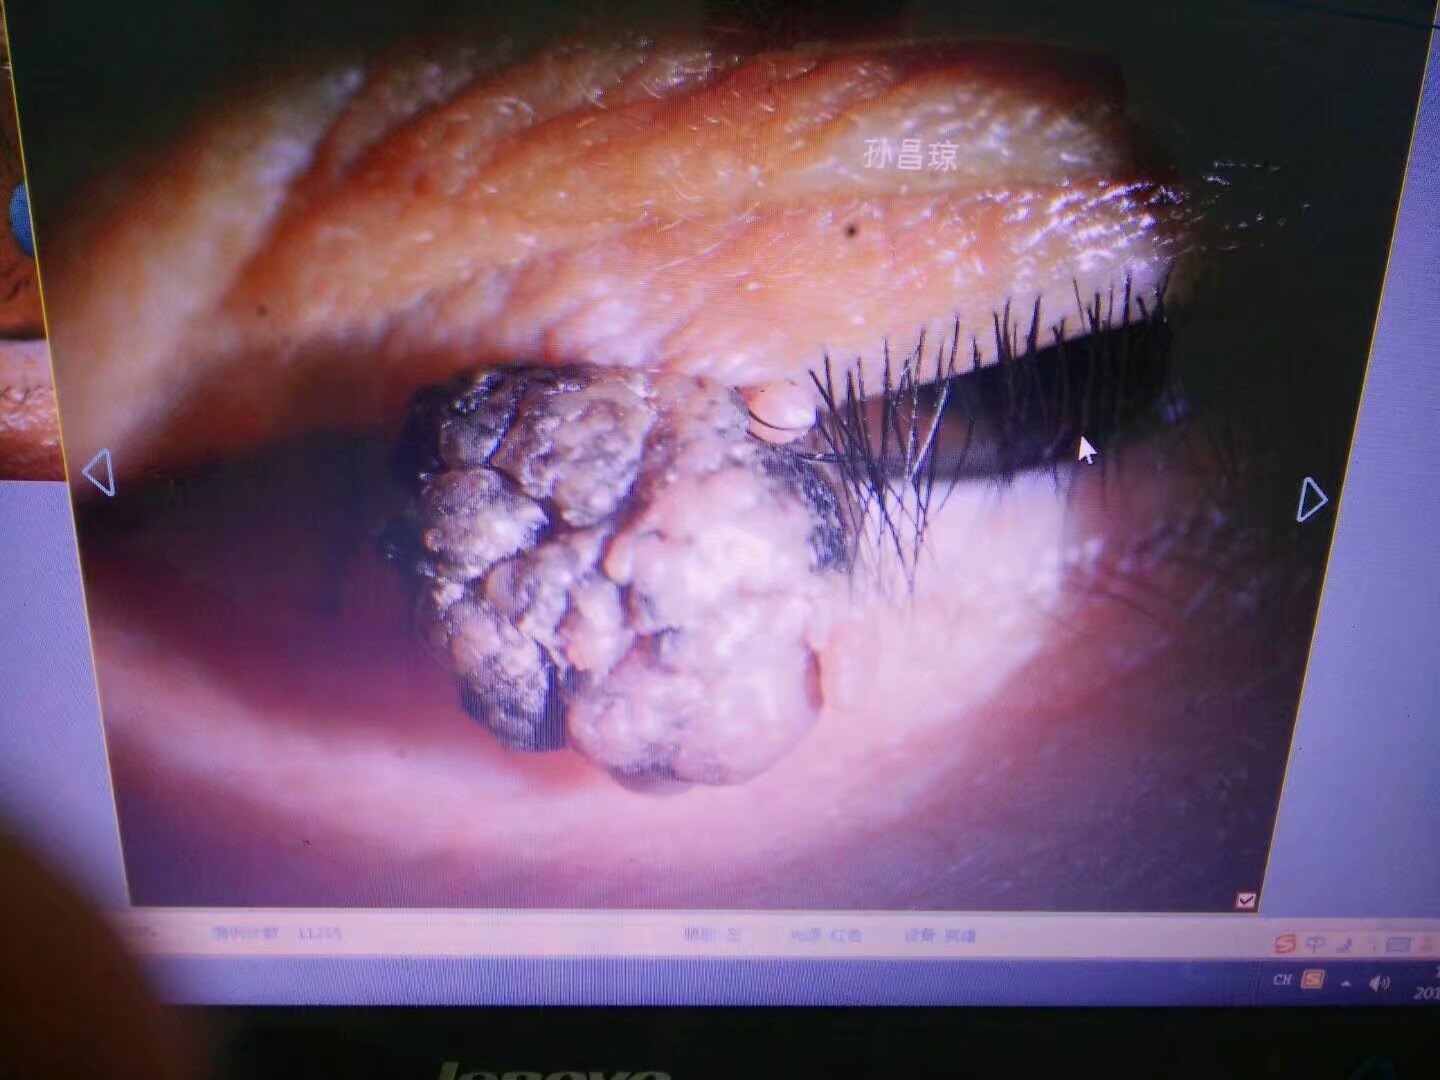 眼睑乳头状瘤图片